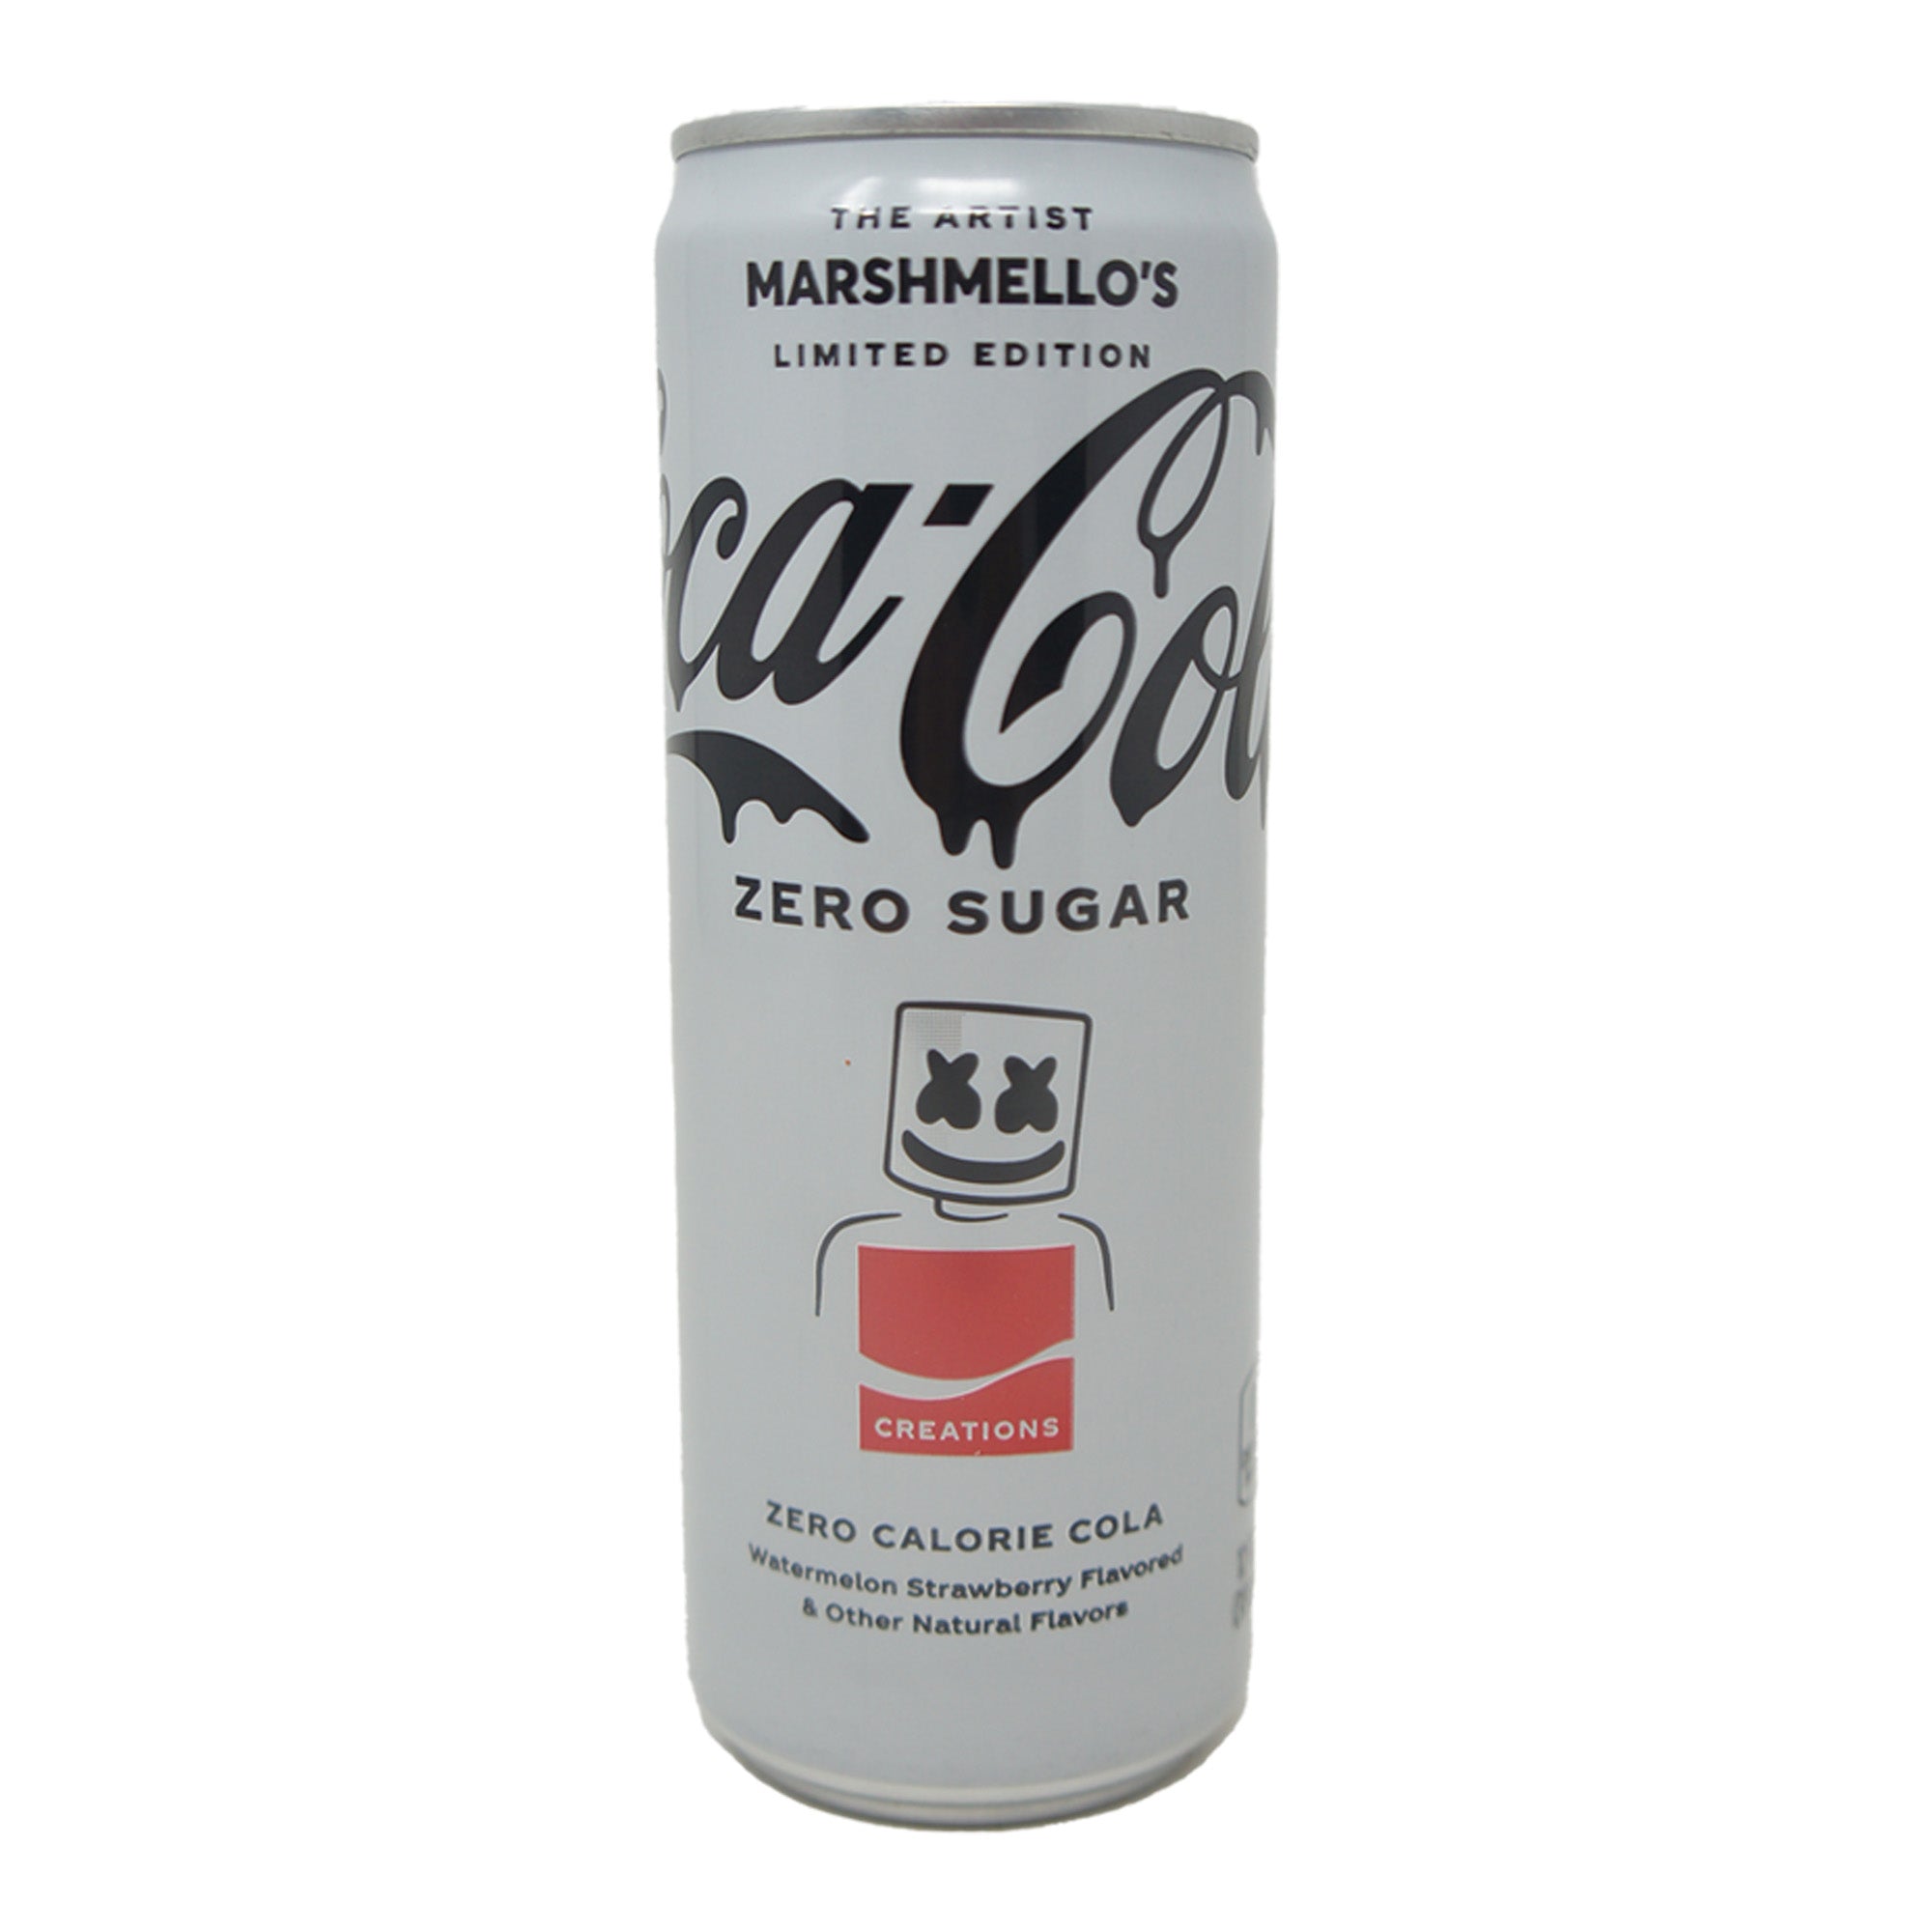 Coca Cola Zero Sugar Limited Edition, the Artist Marshmallow's, Watermelon Strawberry Flavored